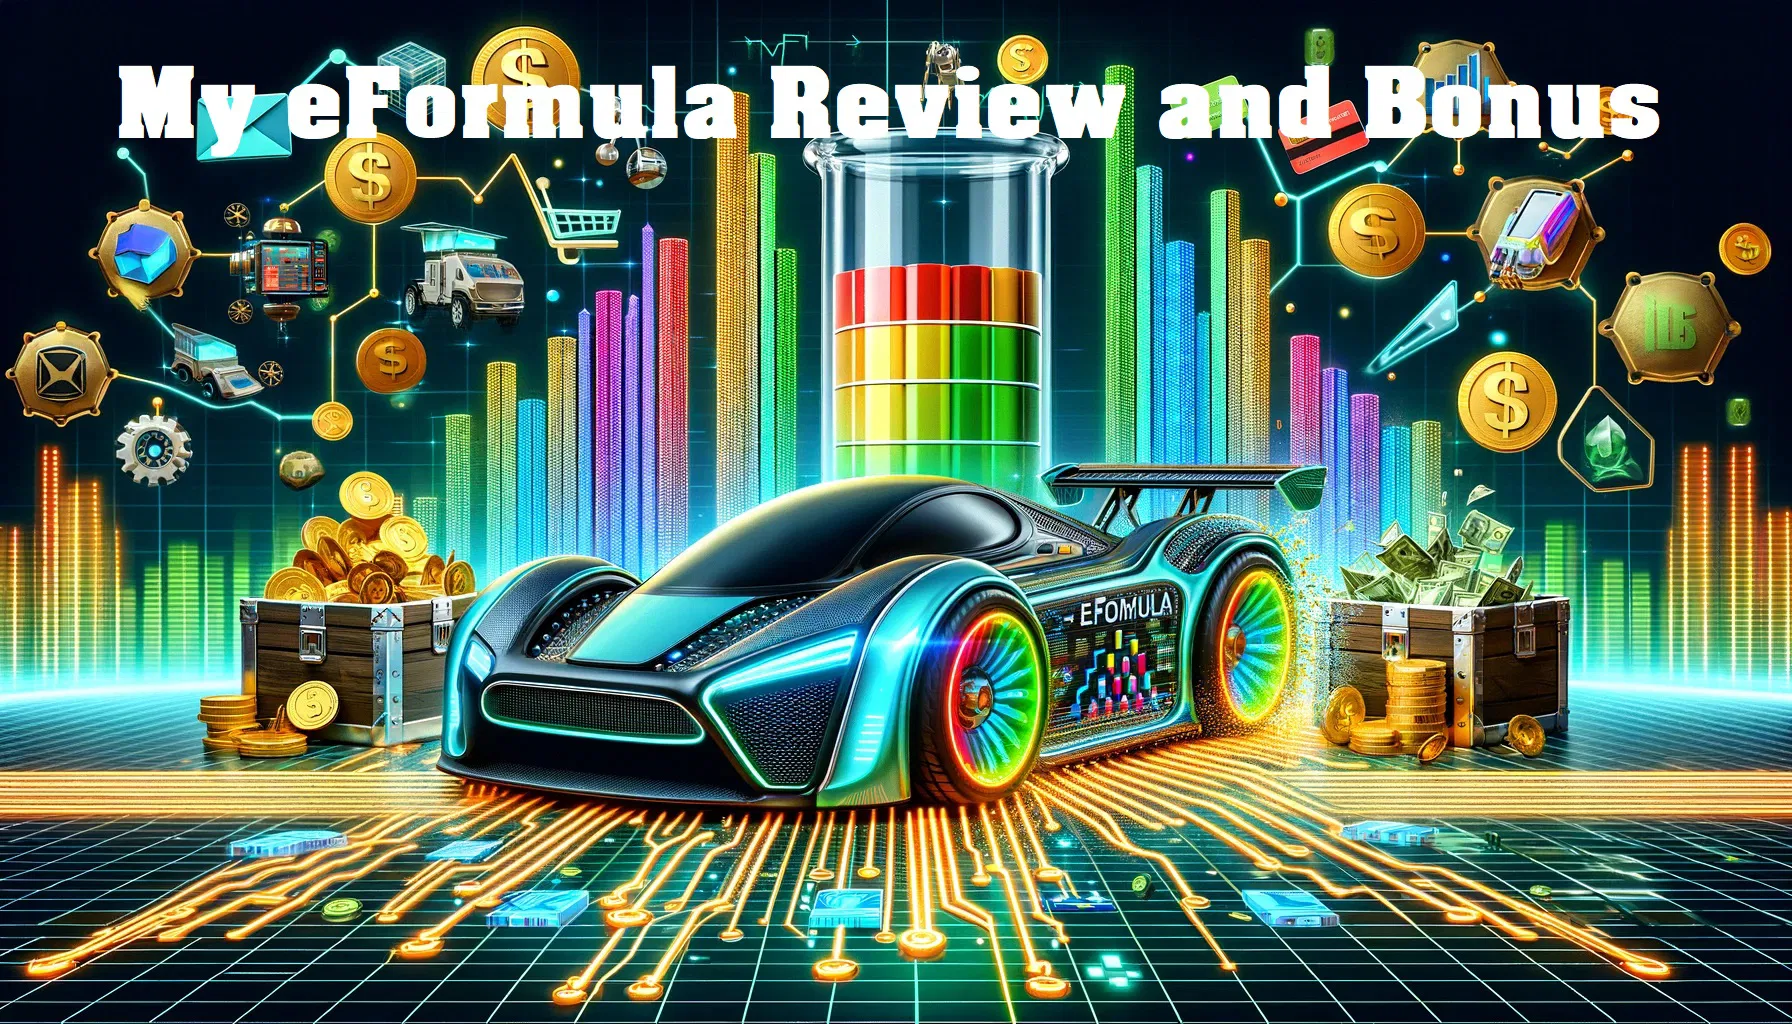 eFormula review and bonus